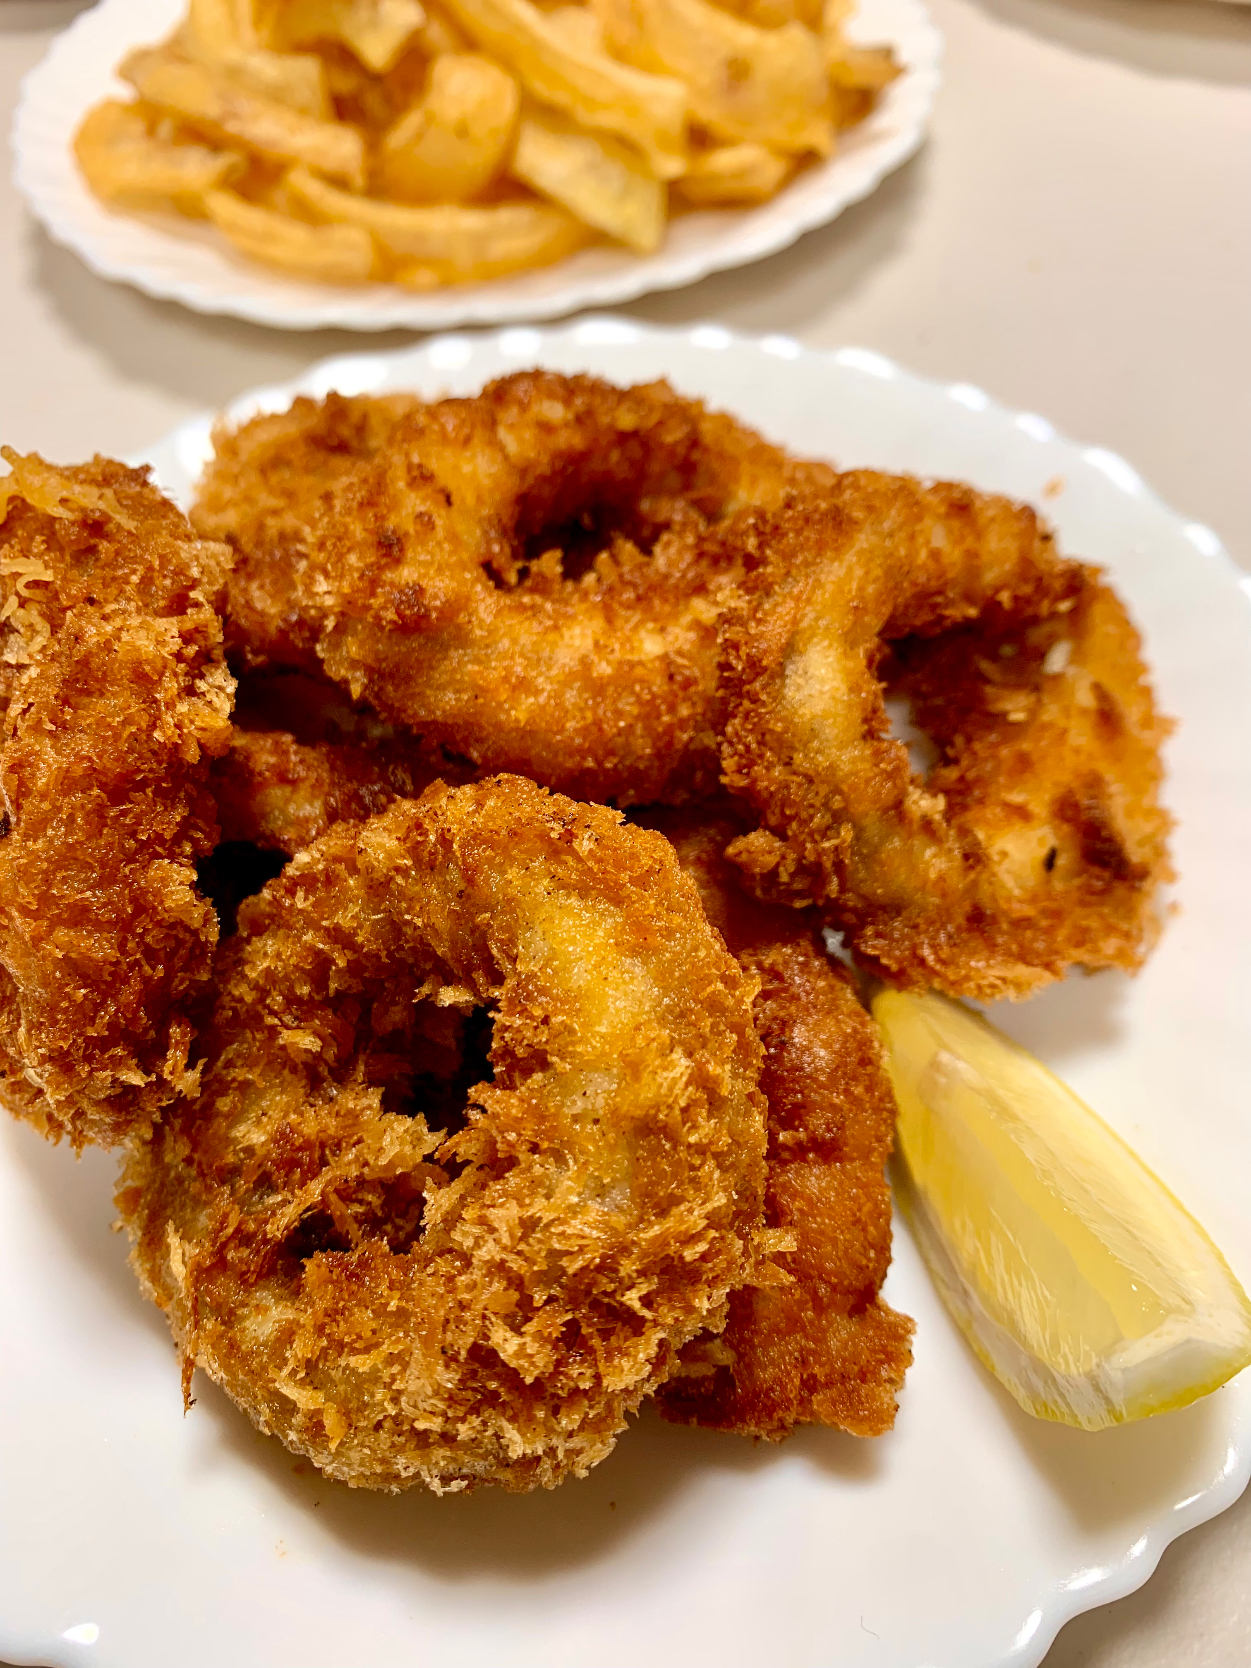 Deep Fried Squid Rings(Calamari)